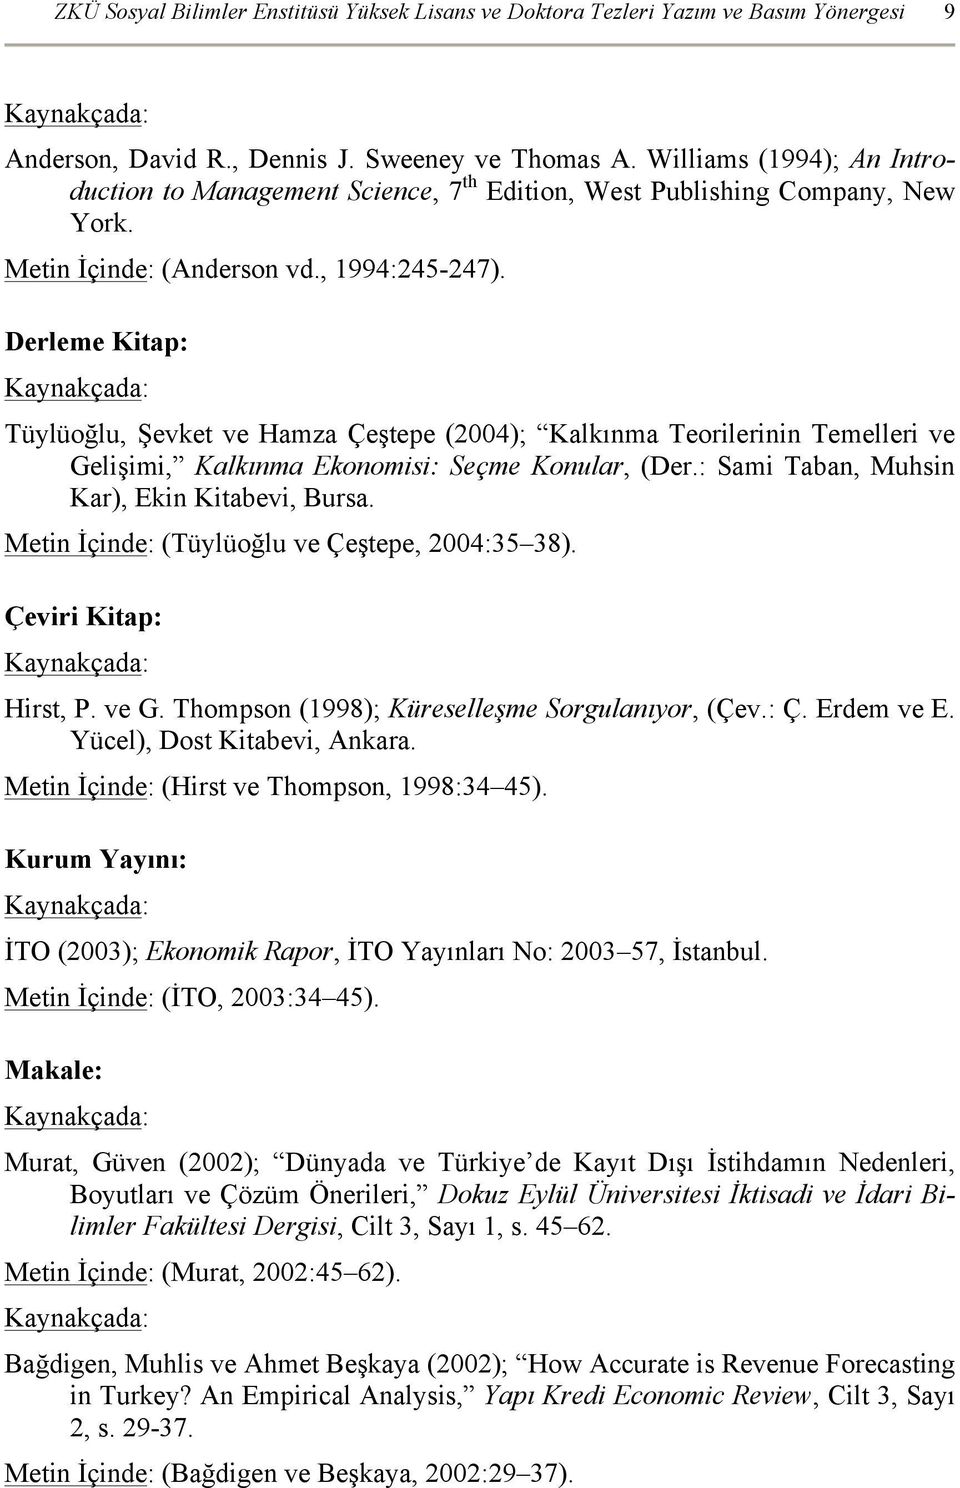 Derleme Kitap: Tüylüoğlu, Şevket ve Hamza Çeştepe (2004); Kalkınma Teorilerinin Temelleri ve Gelişimi, Kalkınma Ekonomisi: Seçme Konular, (Der.: Sami Taban, Muhsin Kar), Ekin Kitabevi, Bursa.